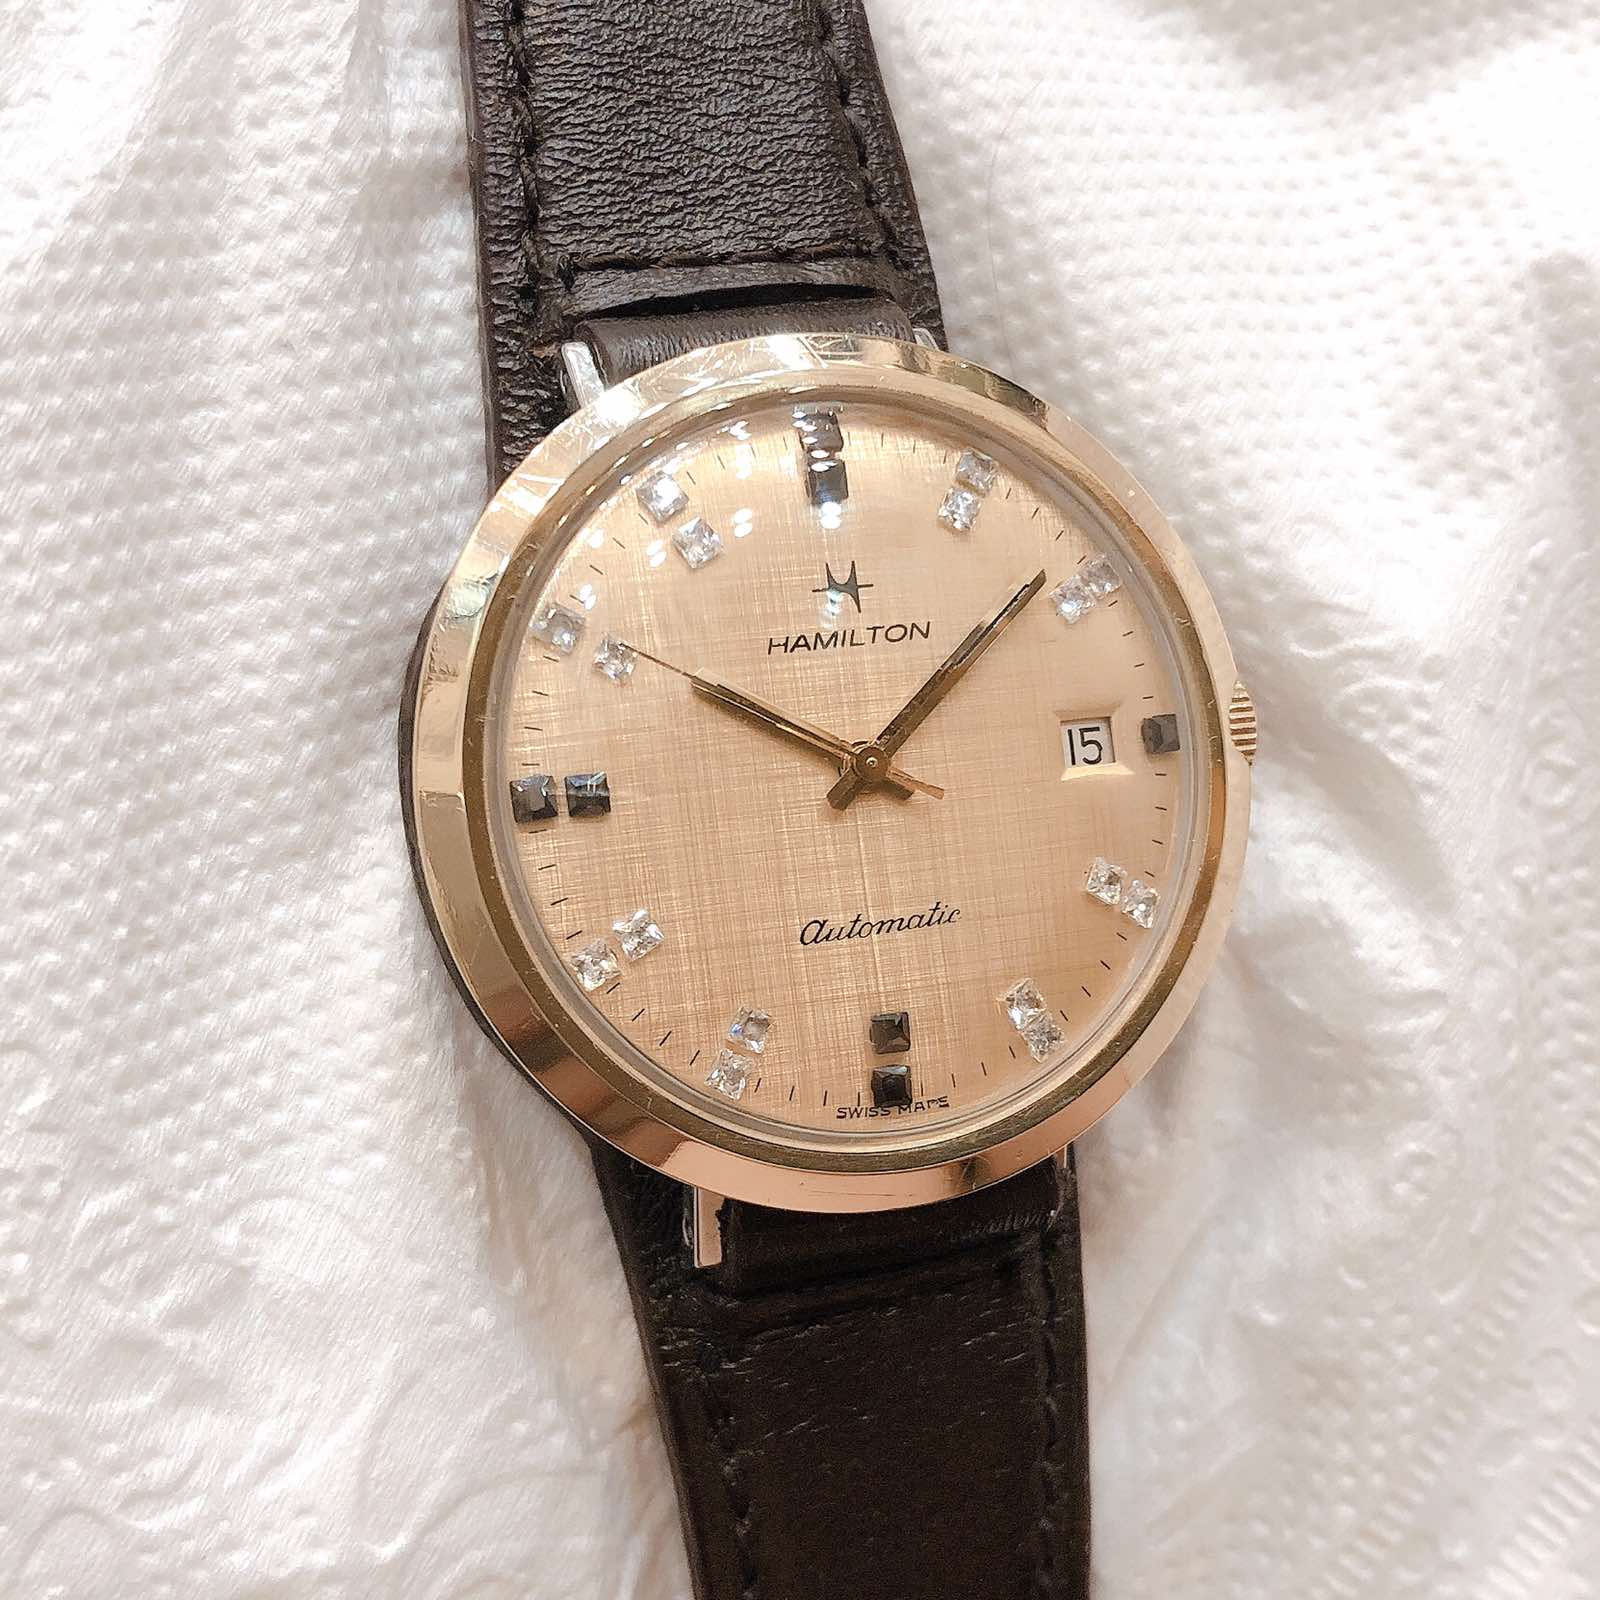 Đồng hồ cổ Hamilton Automatic DMI chính hãng thuỵ sỹ